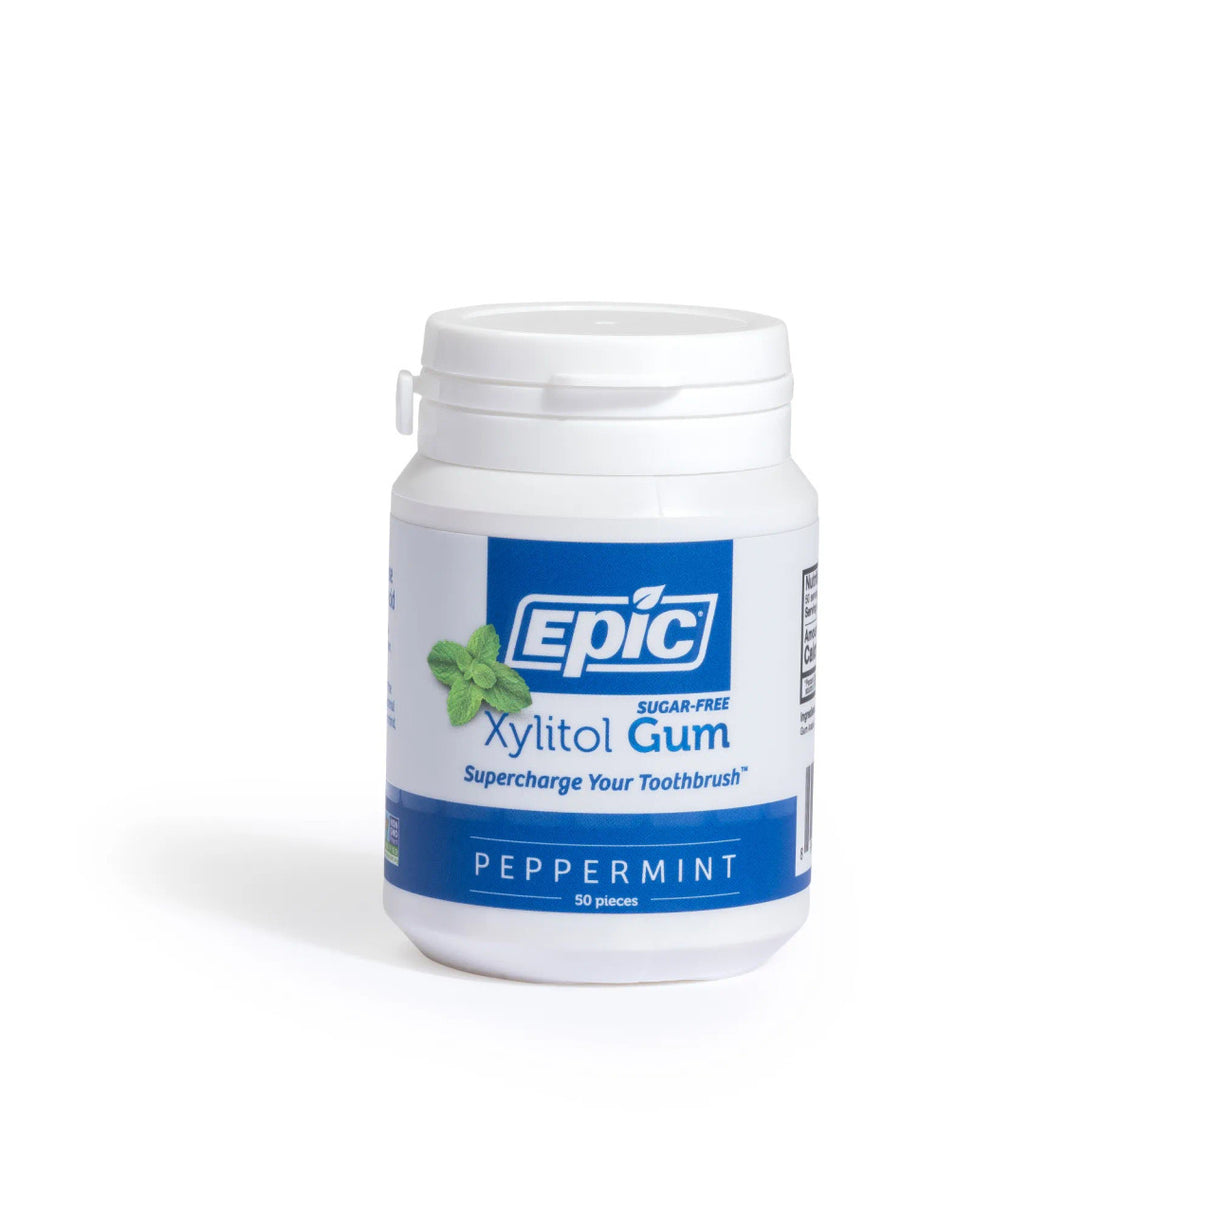 Epic Dental Xylitol Gum - Sugar-Free Peppermint Breath Fresheners (50 ct) - Cozy Farm 